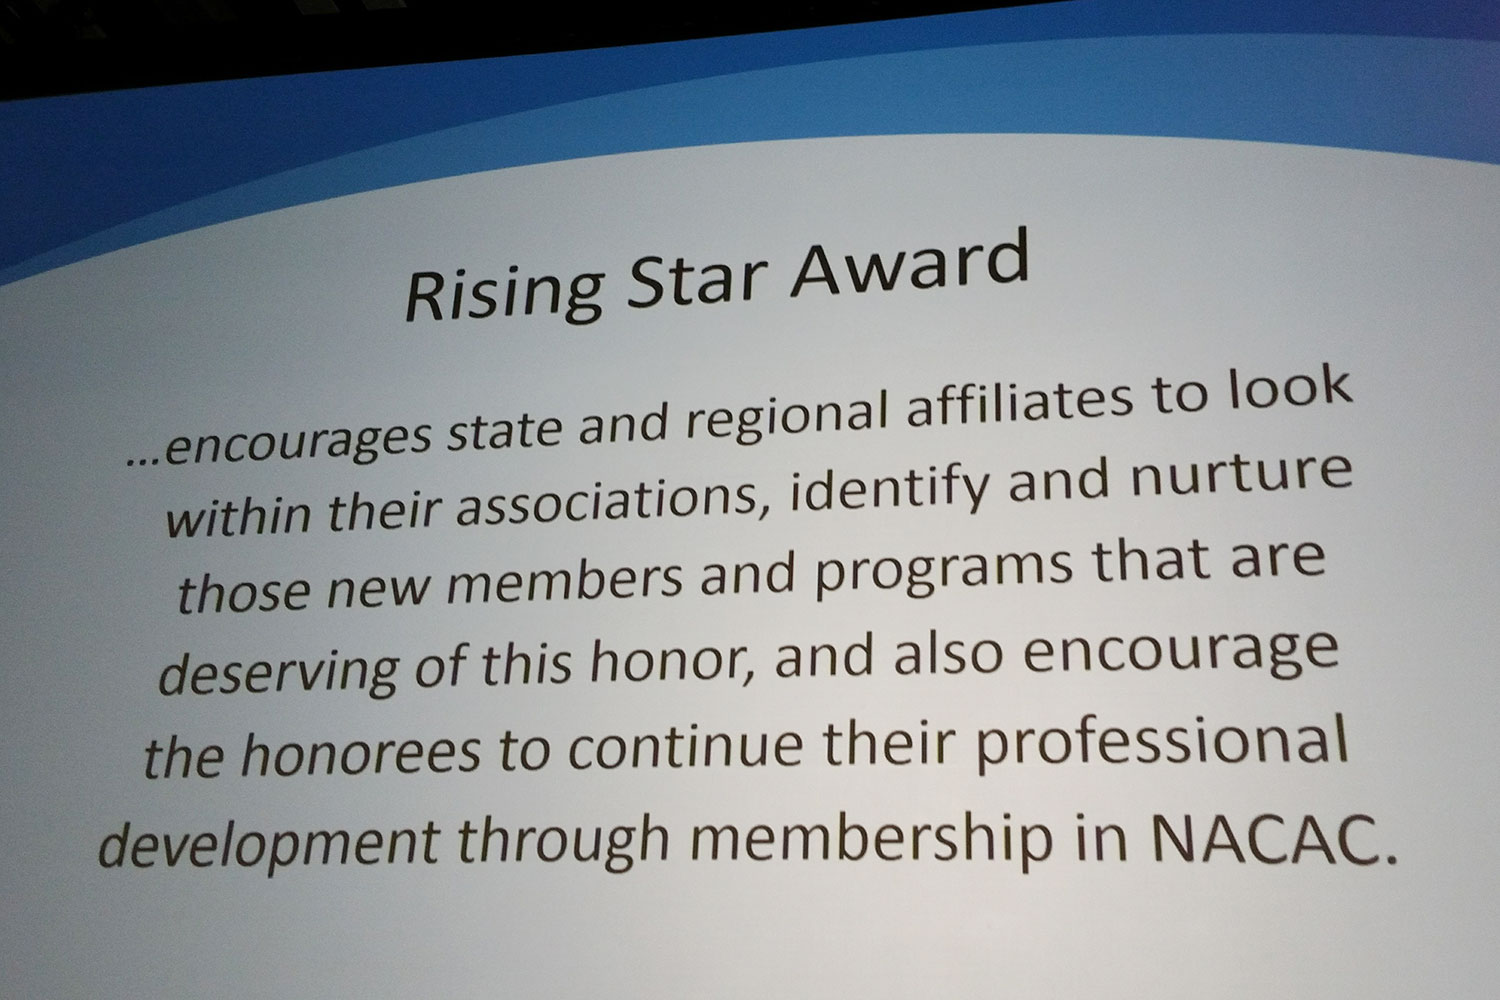 NACAC Rising Star Award for IACAC's Sharing the Dream